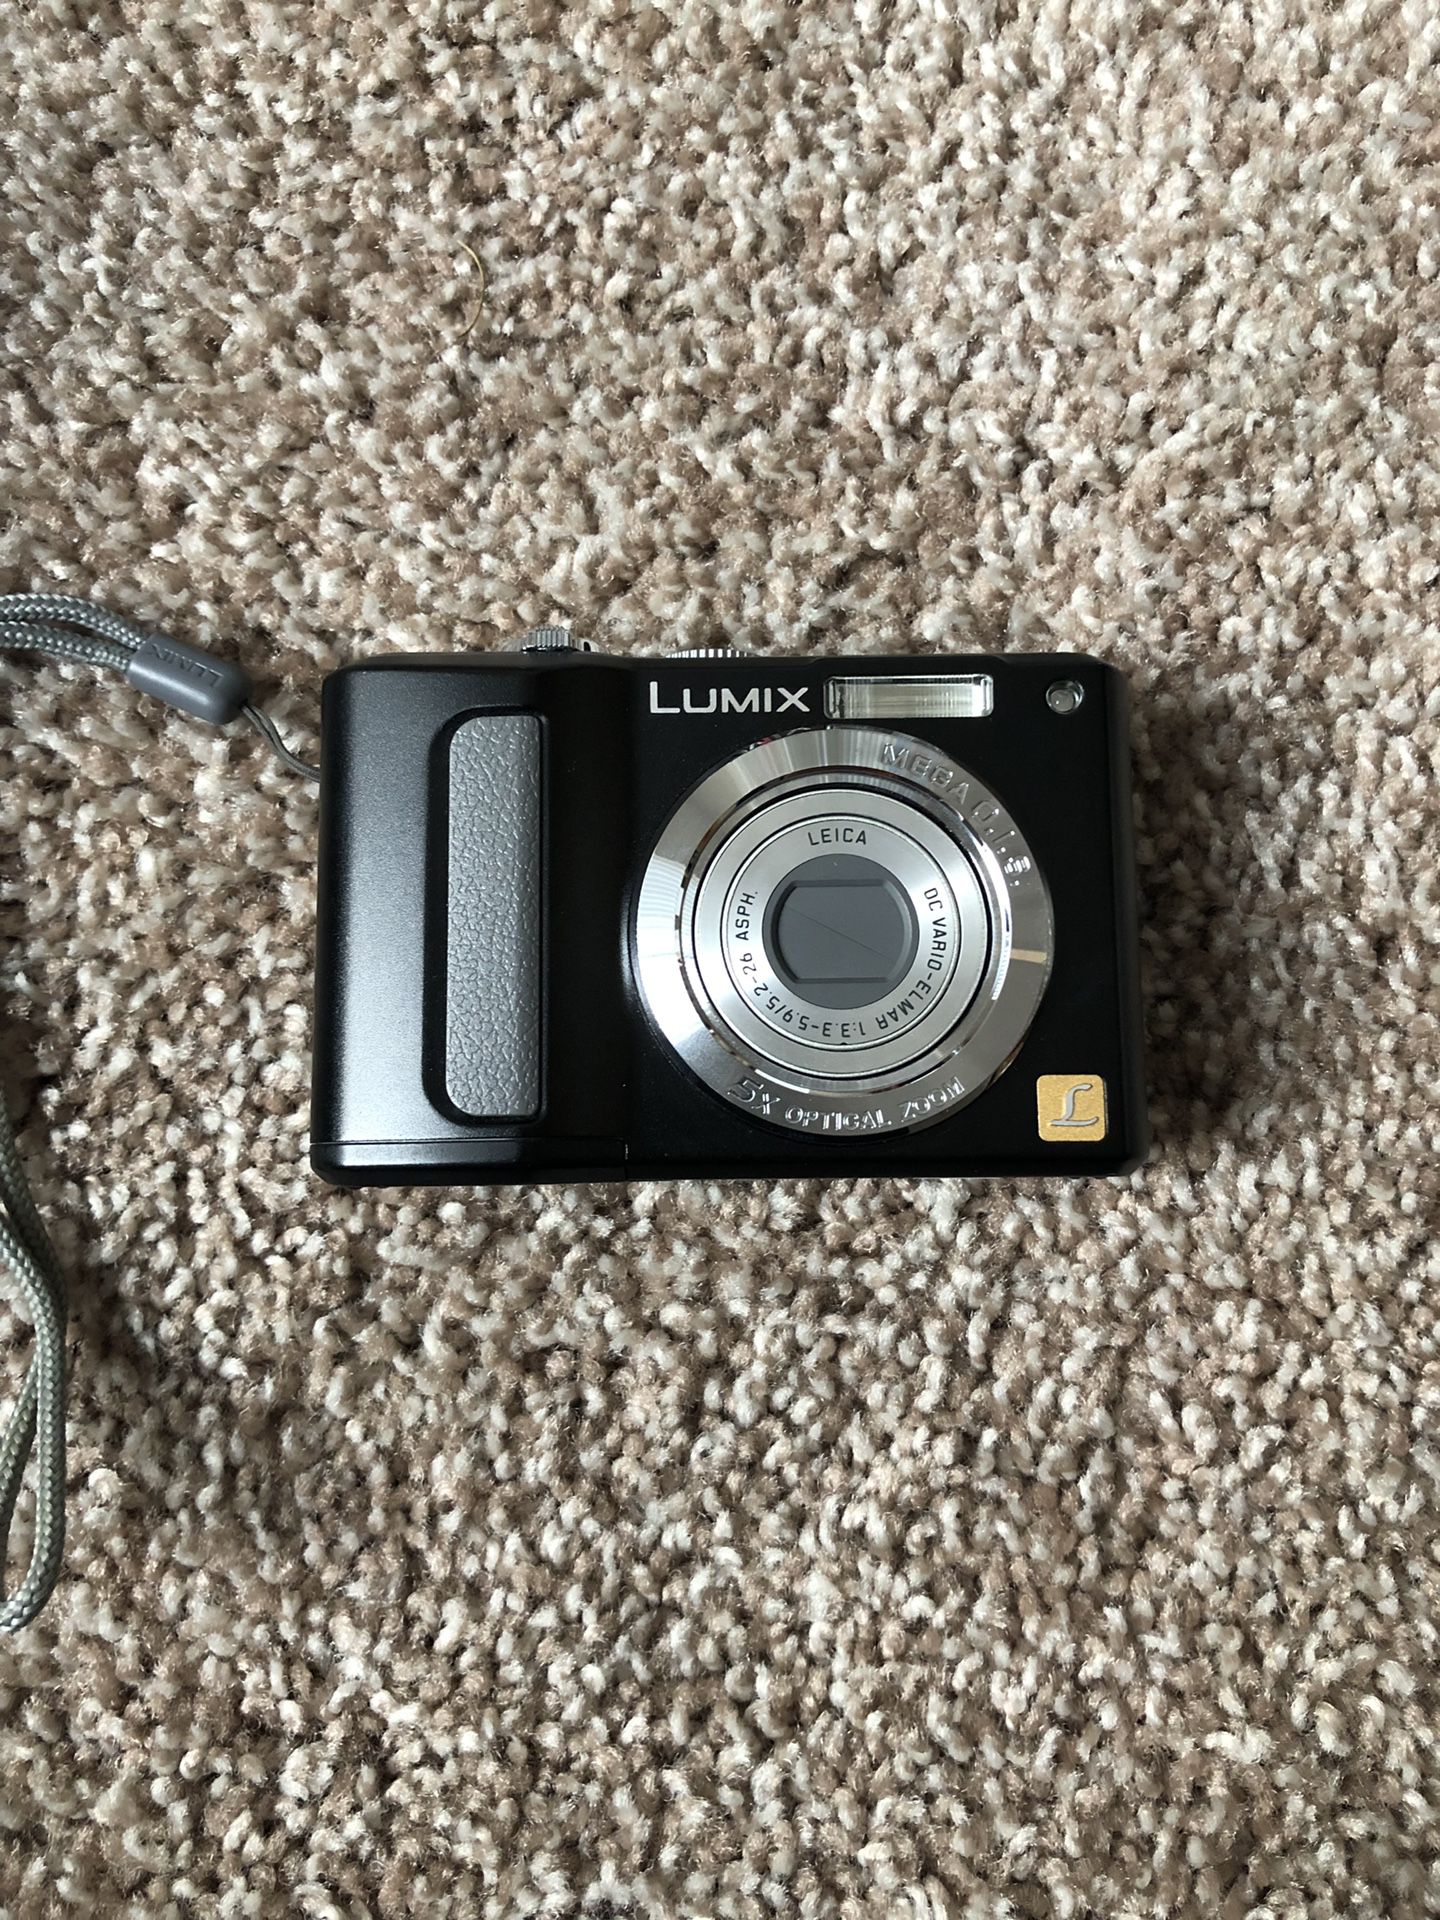 LUMIX digital camera